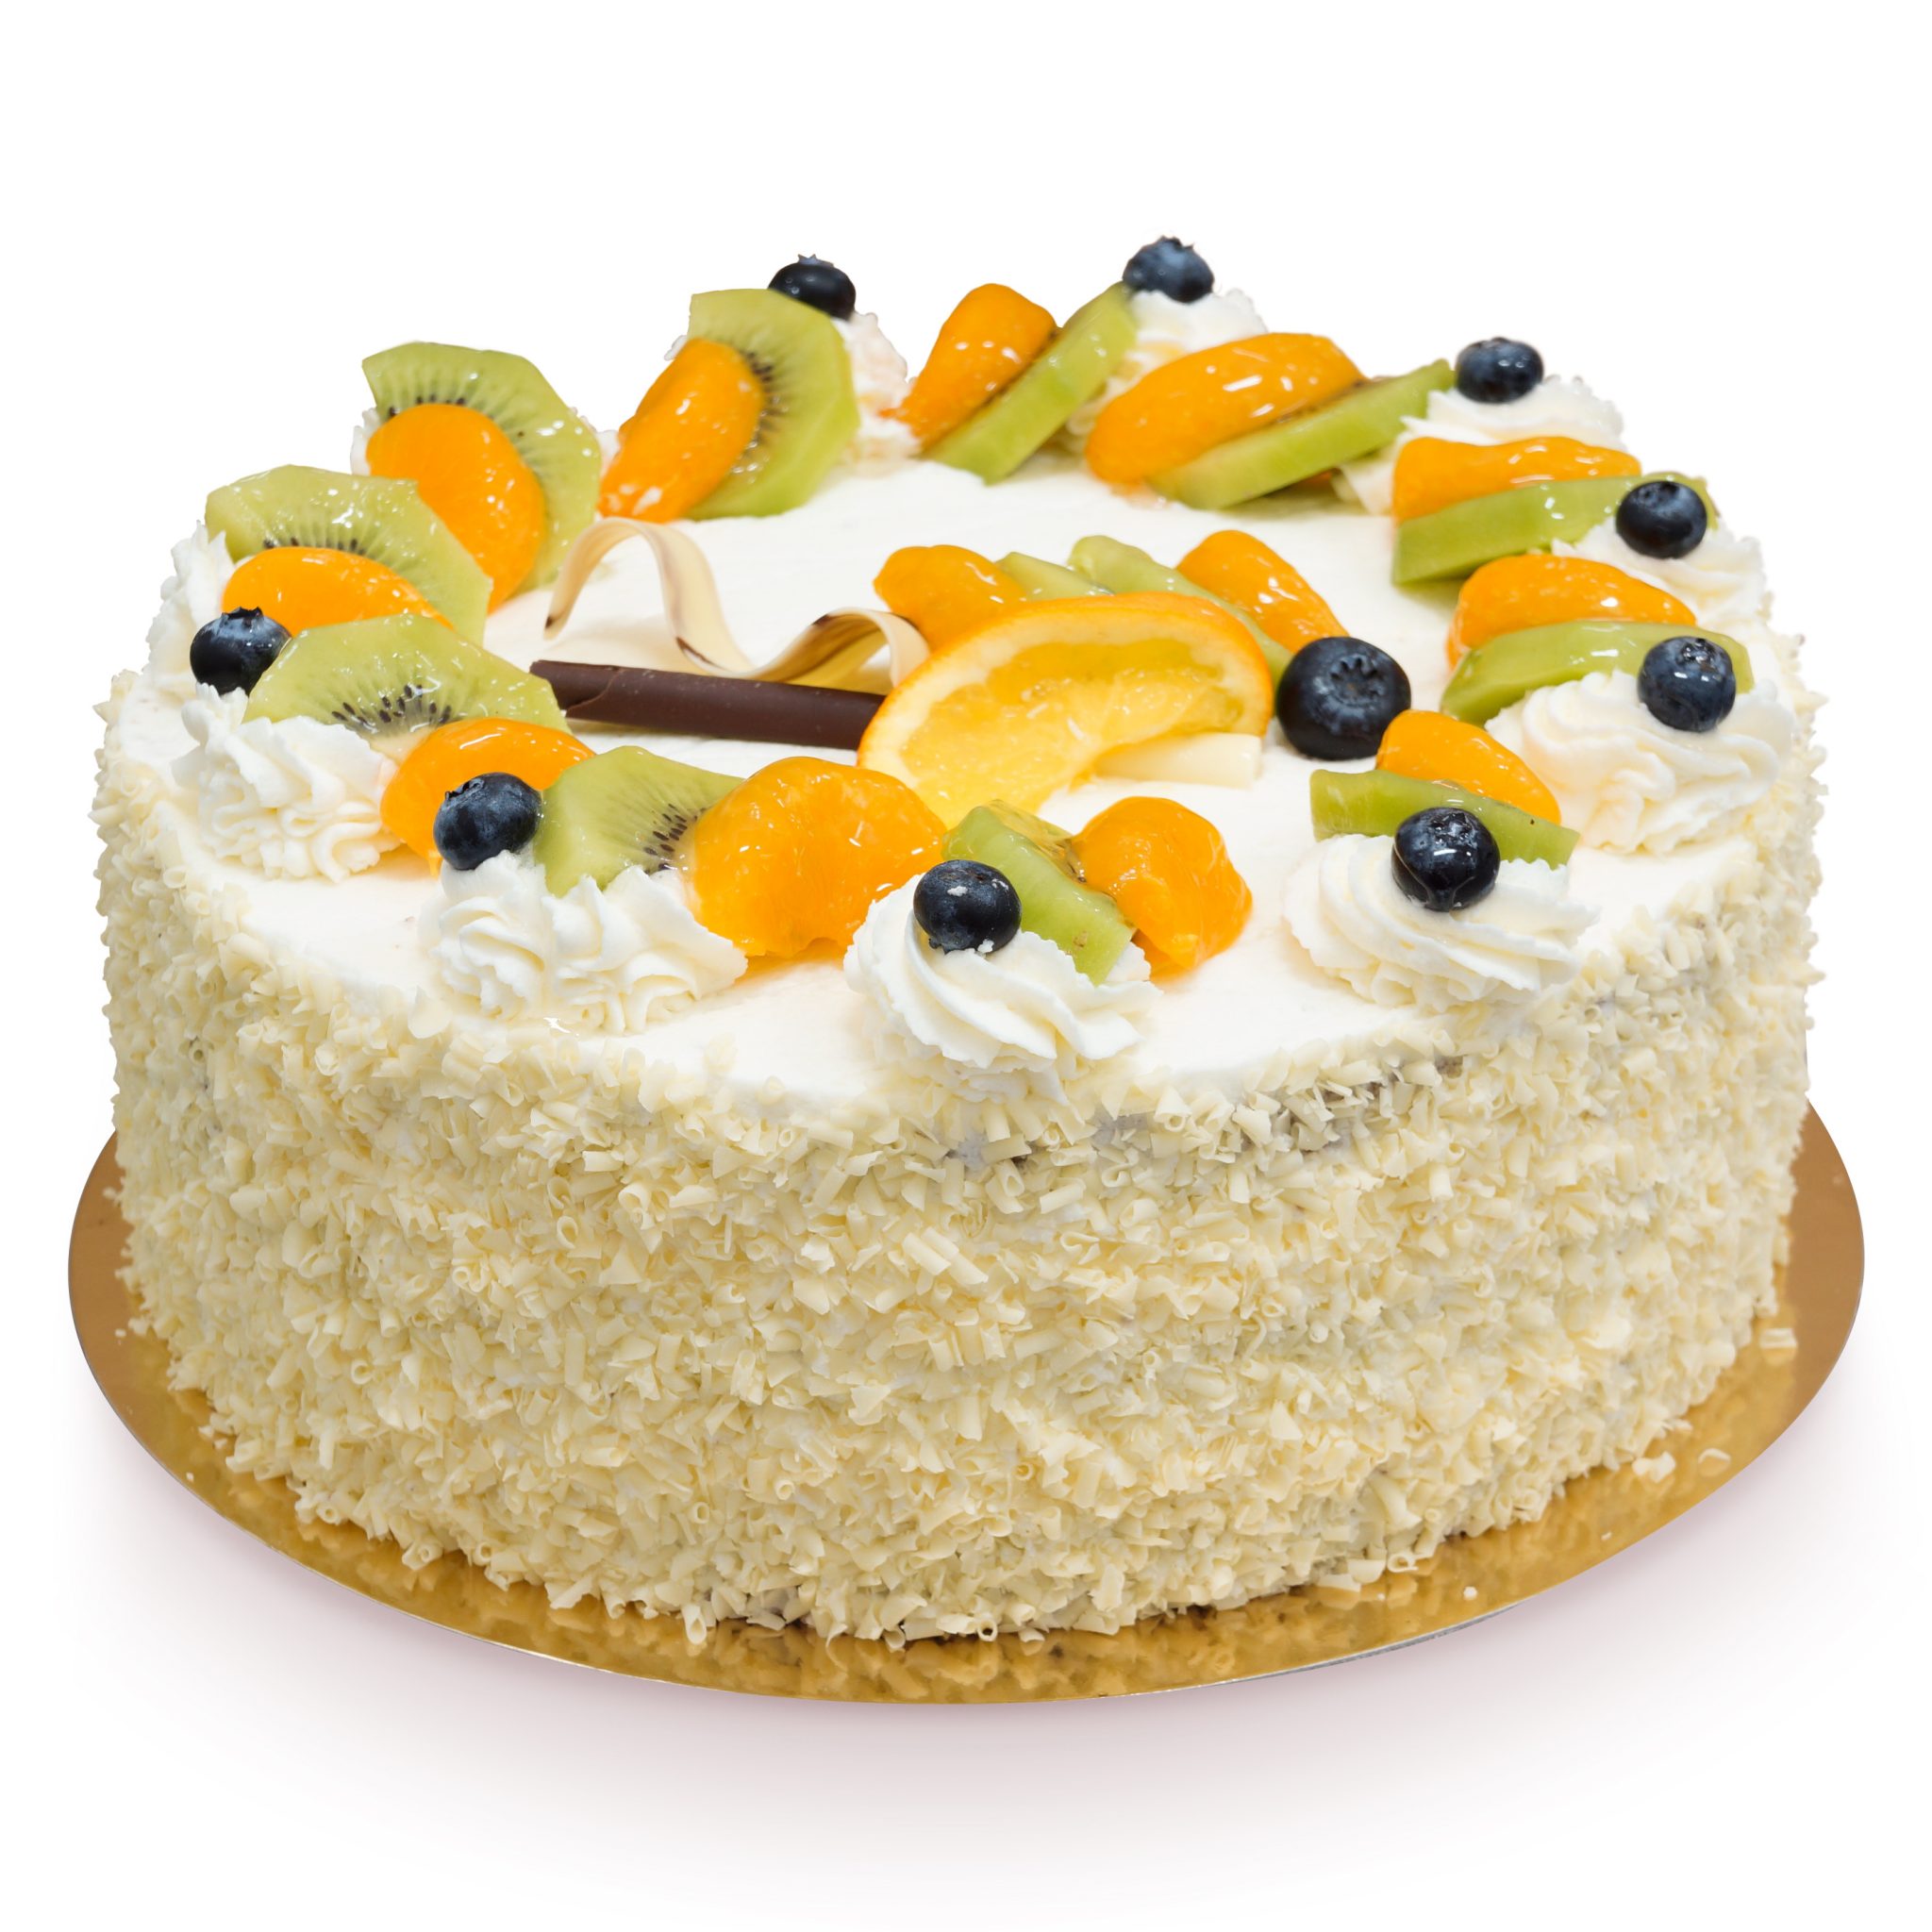 Malutki tort mandarynkami ostrów wielkopolski